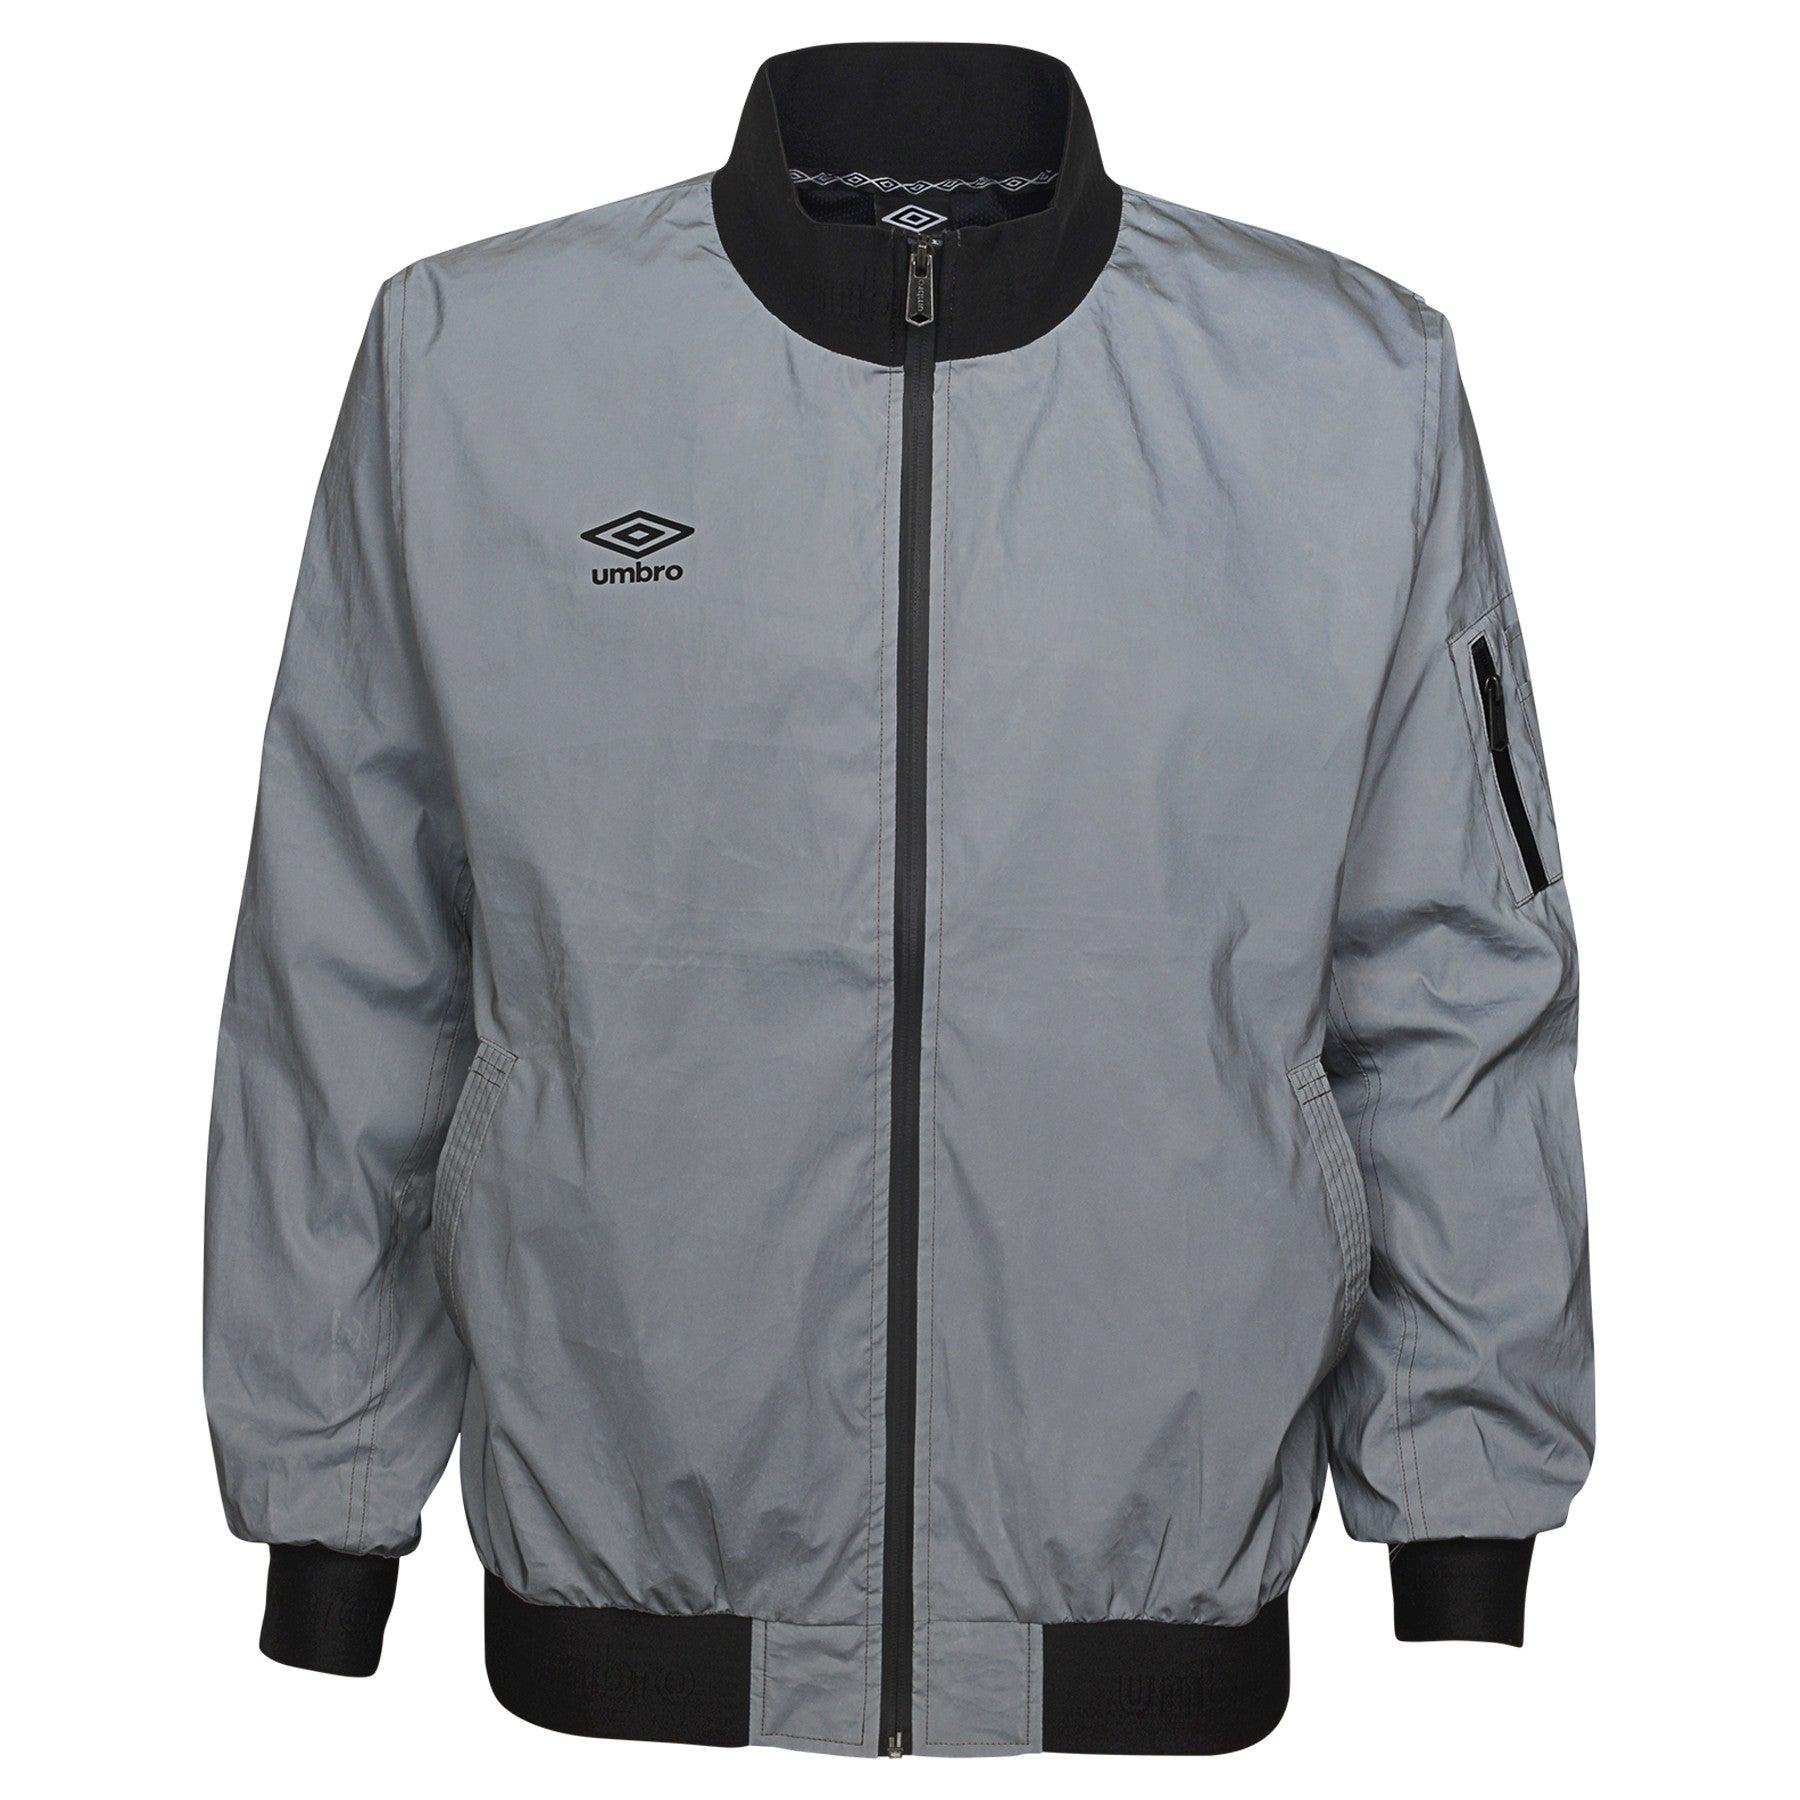 Van God Vesting overtuigen Umbro Men's Full Zip Reflective Jacket, Silver Reflective – Fanletic